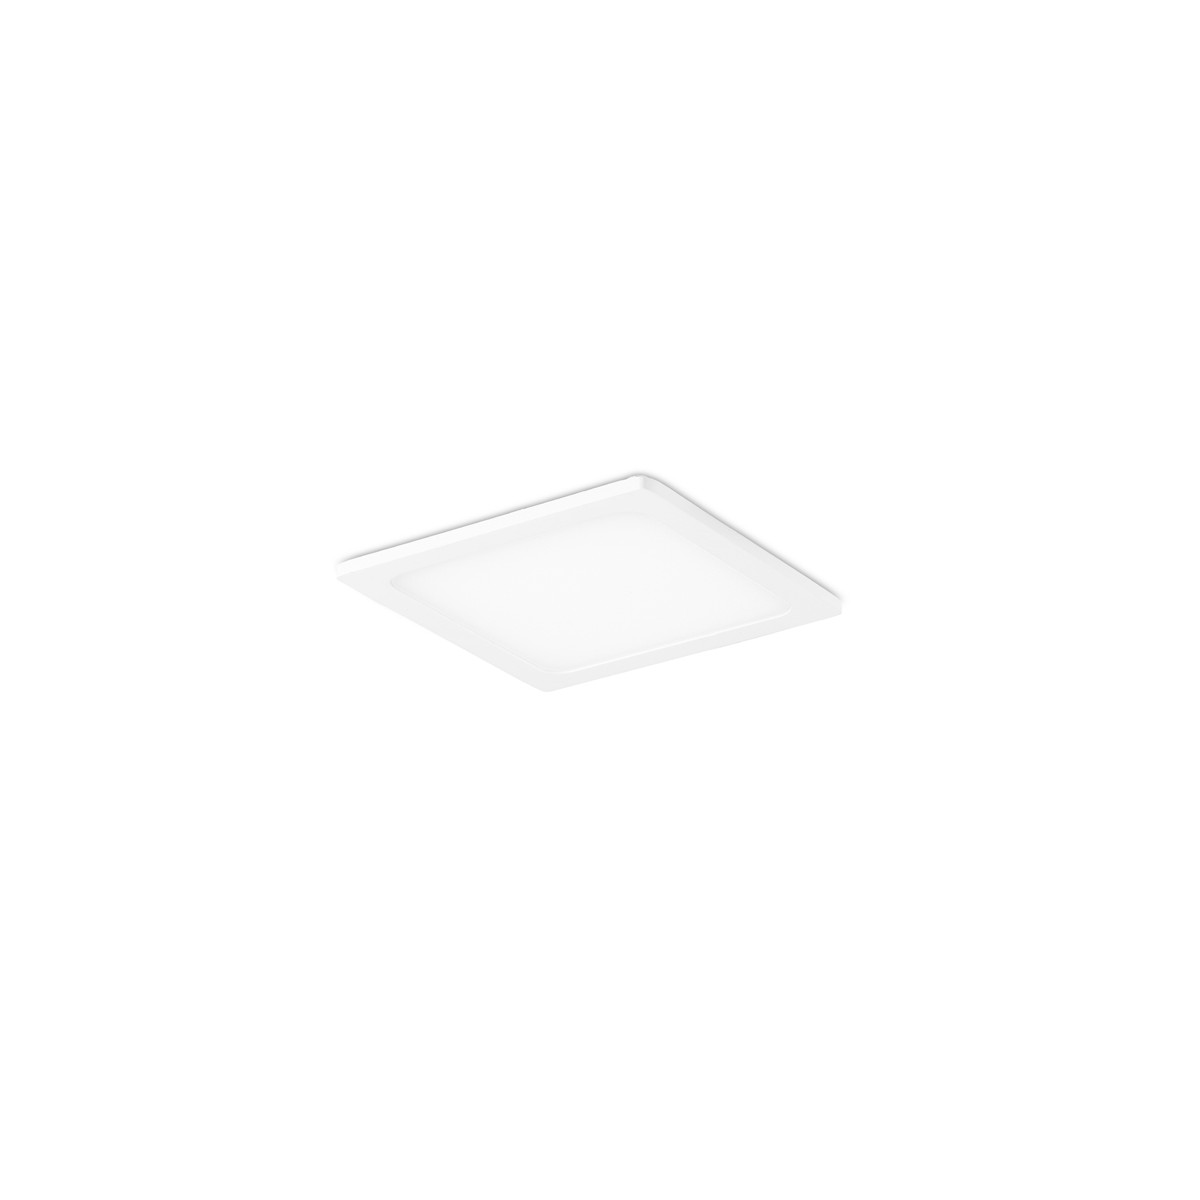 Downlight LED 8W Kaju cuadrado blanco